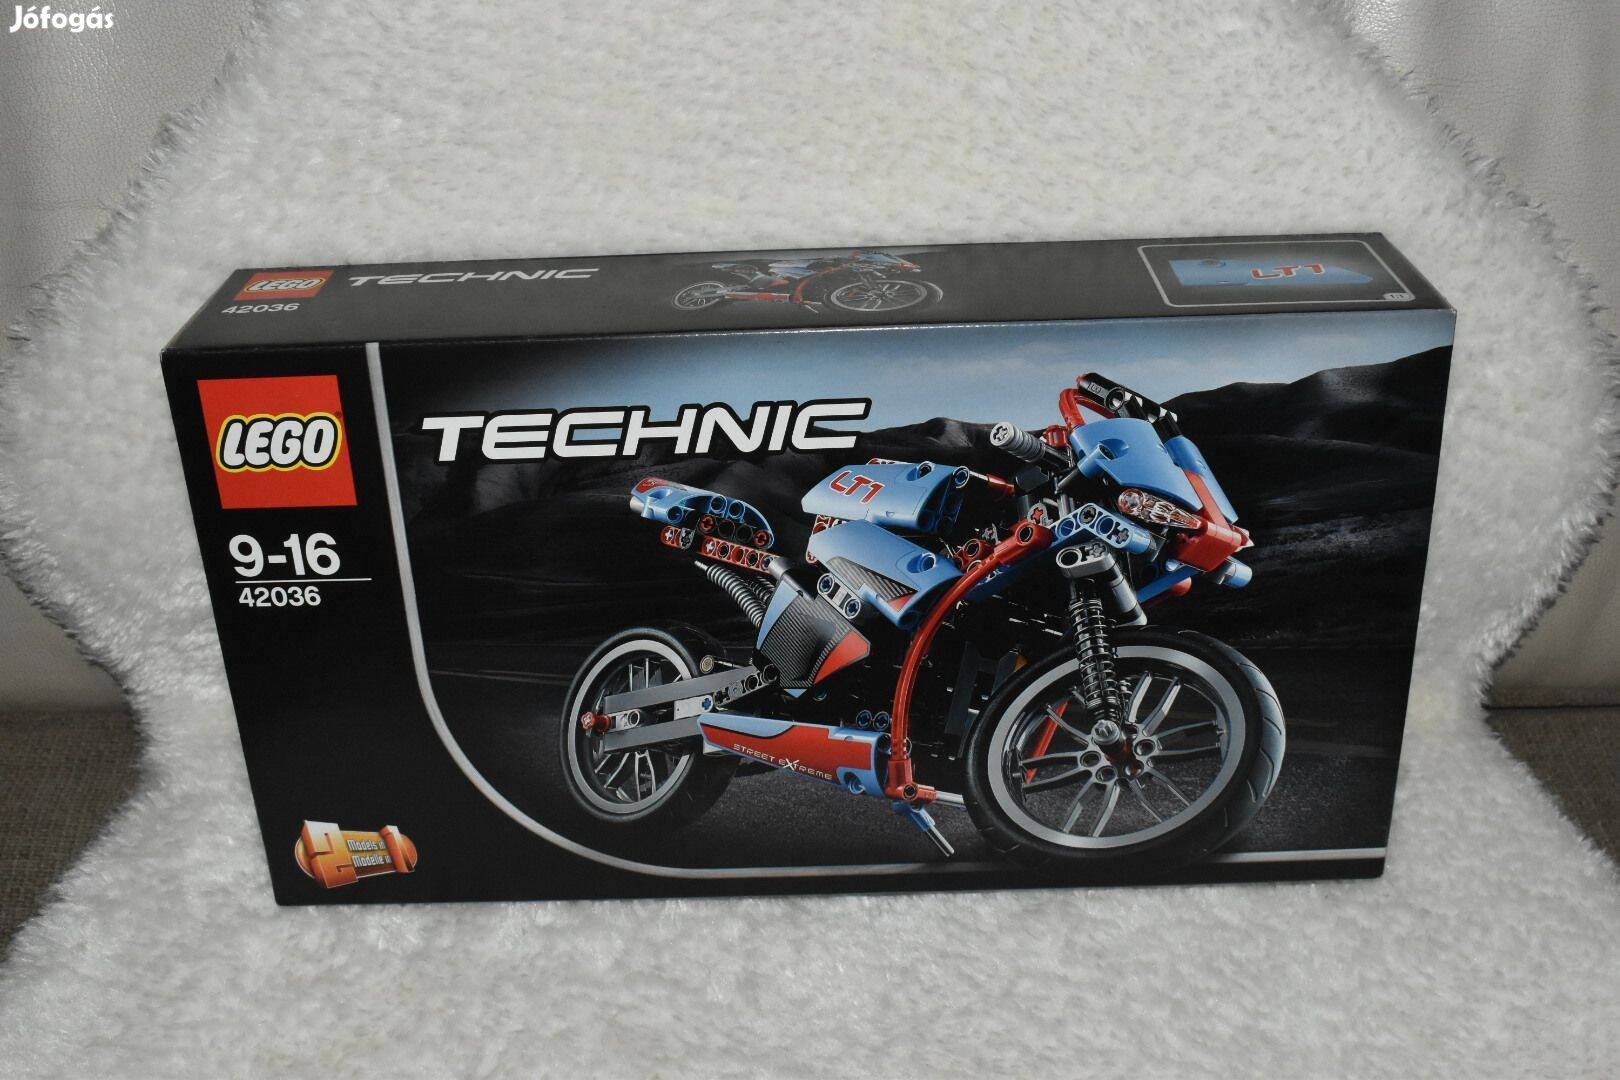 Lego Technic 42036 (Utcai motor) Bontatlan. Ára: 28.000 Ft